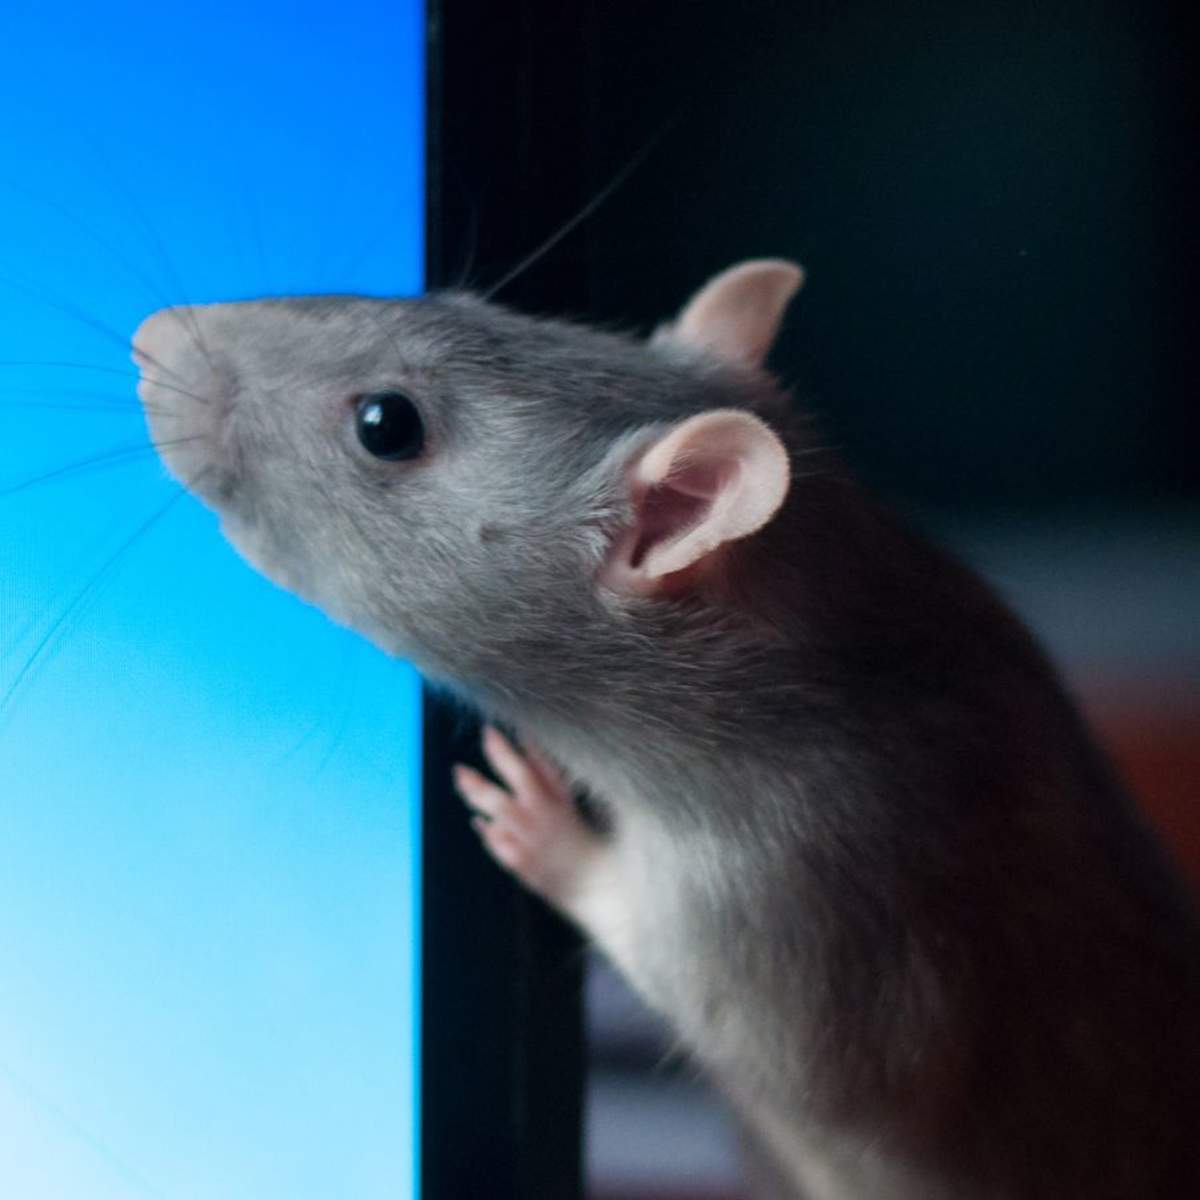 Soñar con ratas: ¿qué significa y cómo debemos interpretarlo?